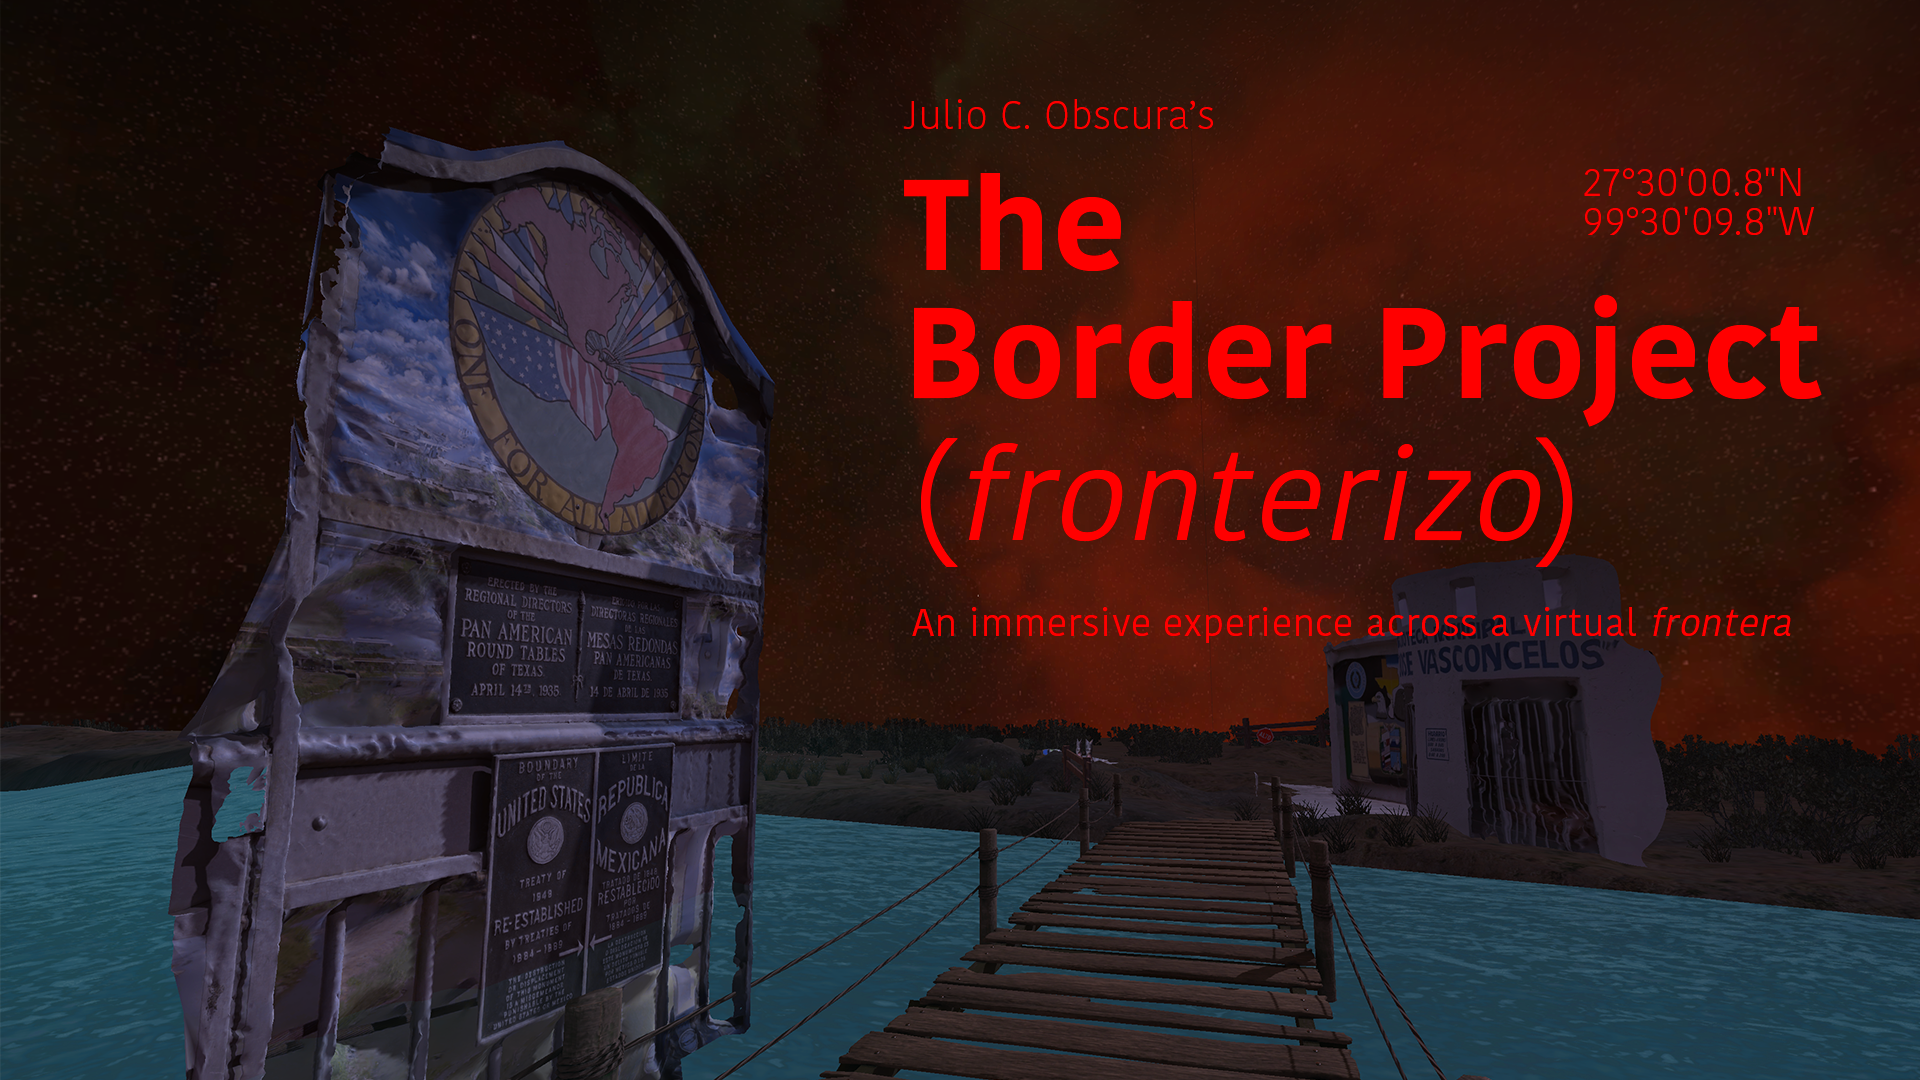   The Border Project (Fronterizo)